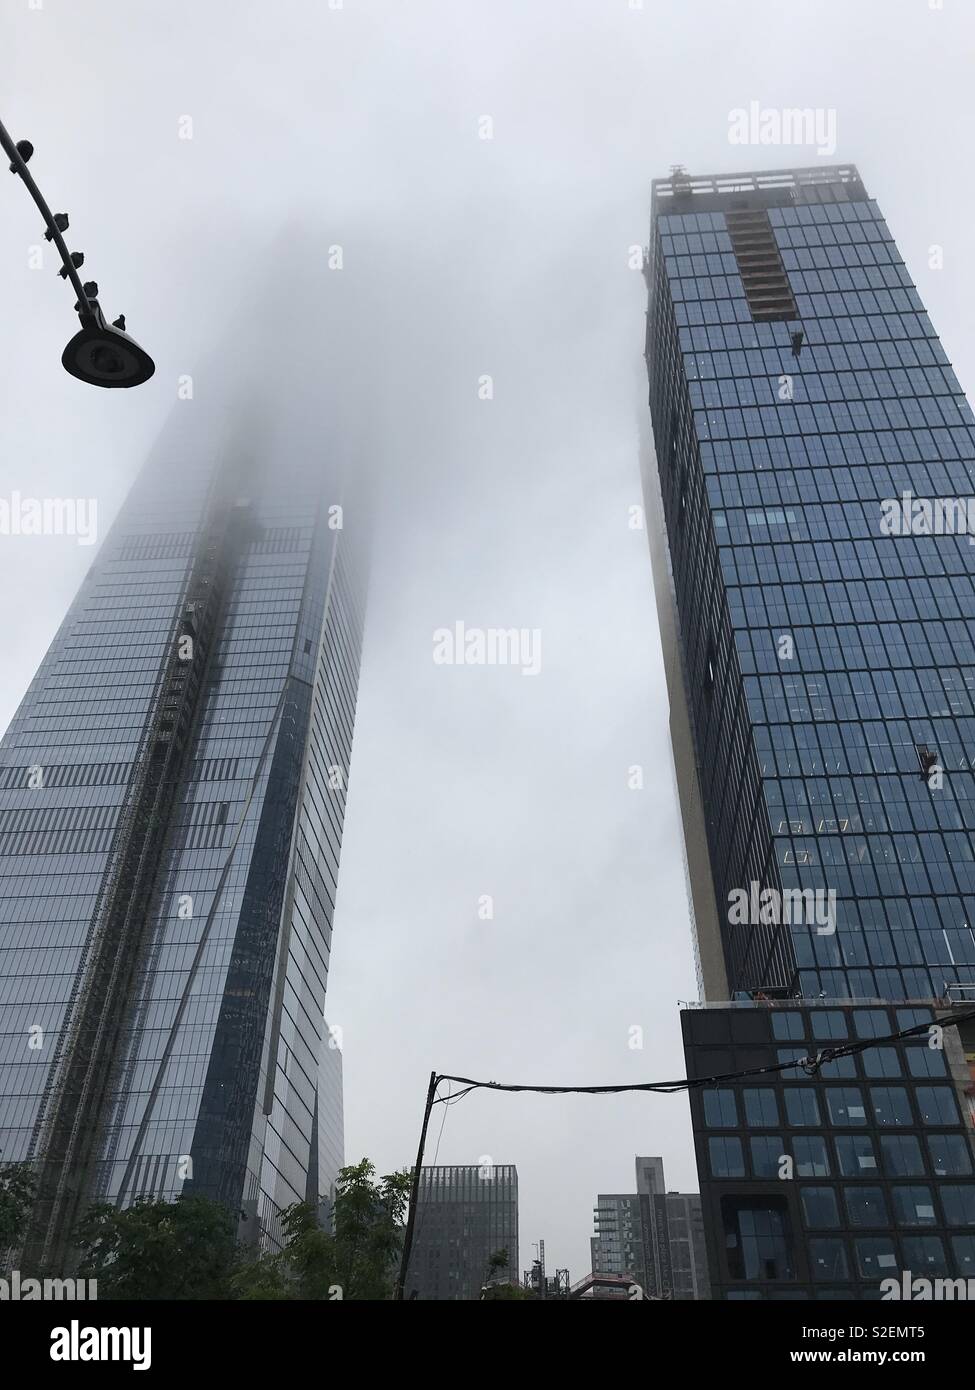 Imagen de dos rascacielos en la Ciudad de Nueva York, cubiertas por la niebla Foto de stock